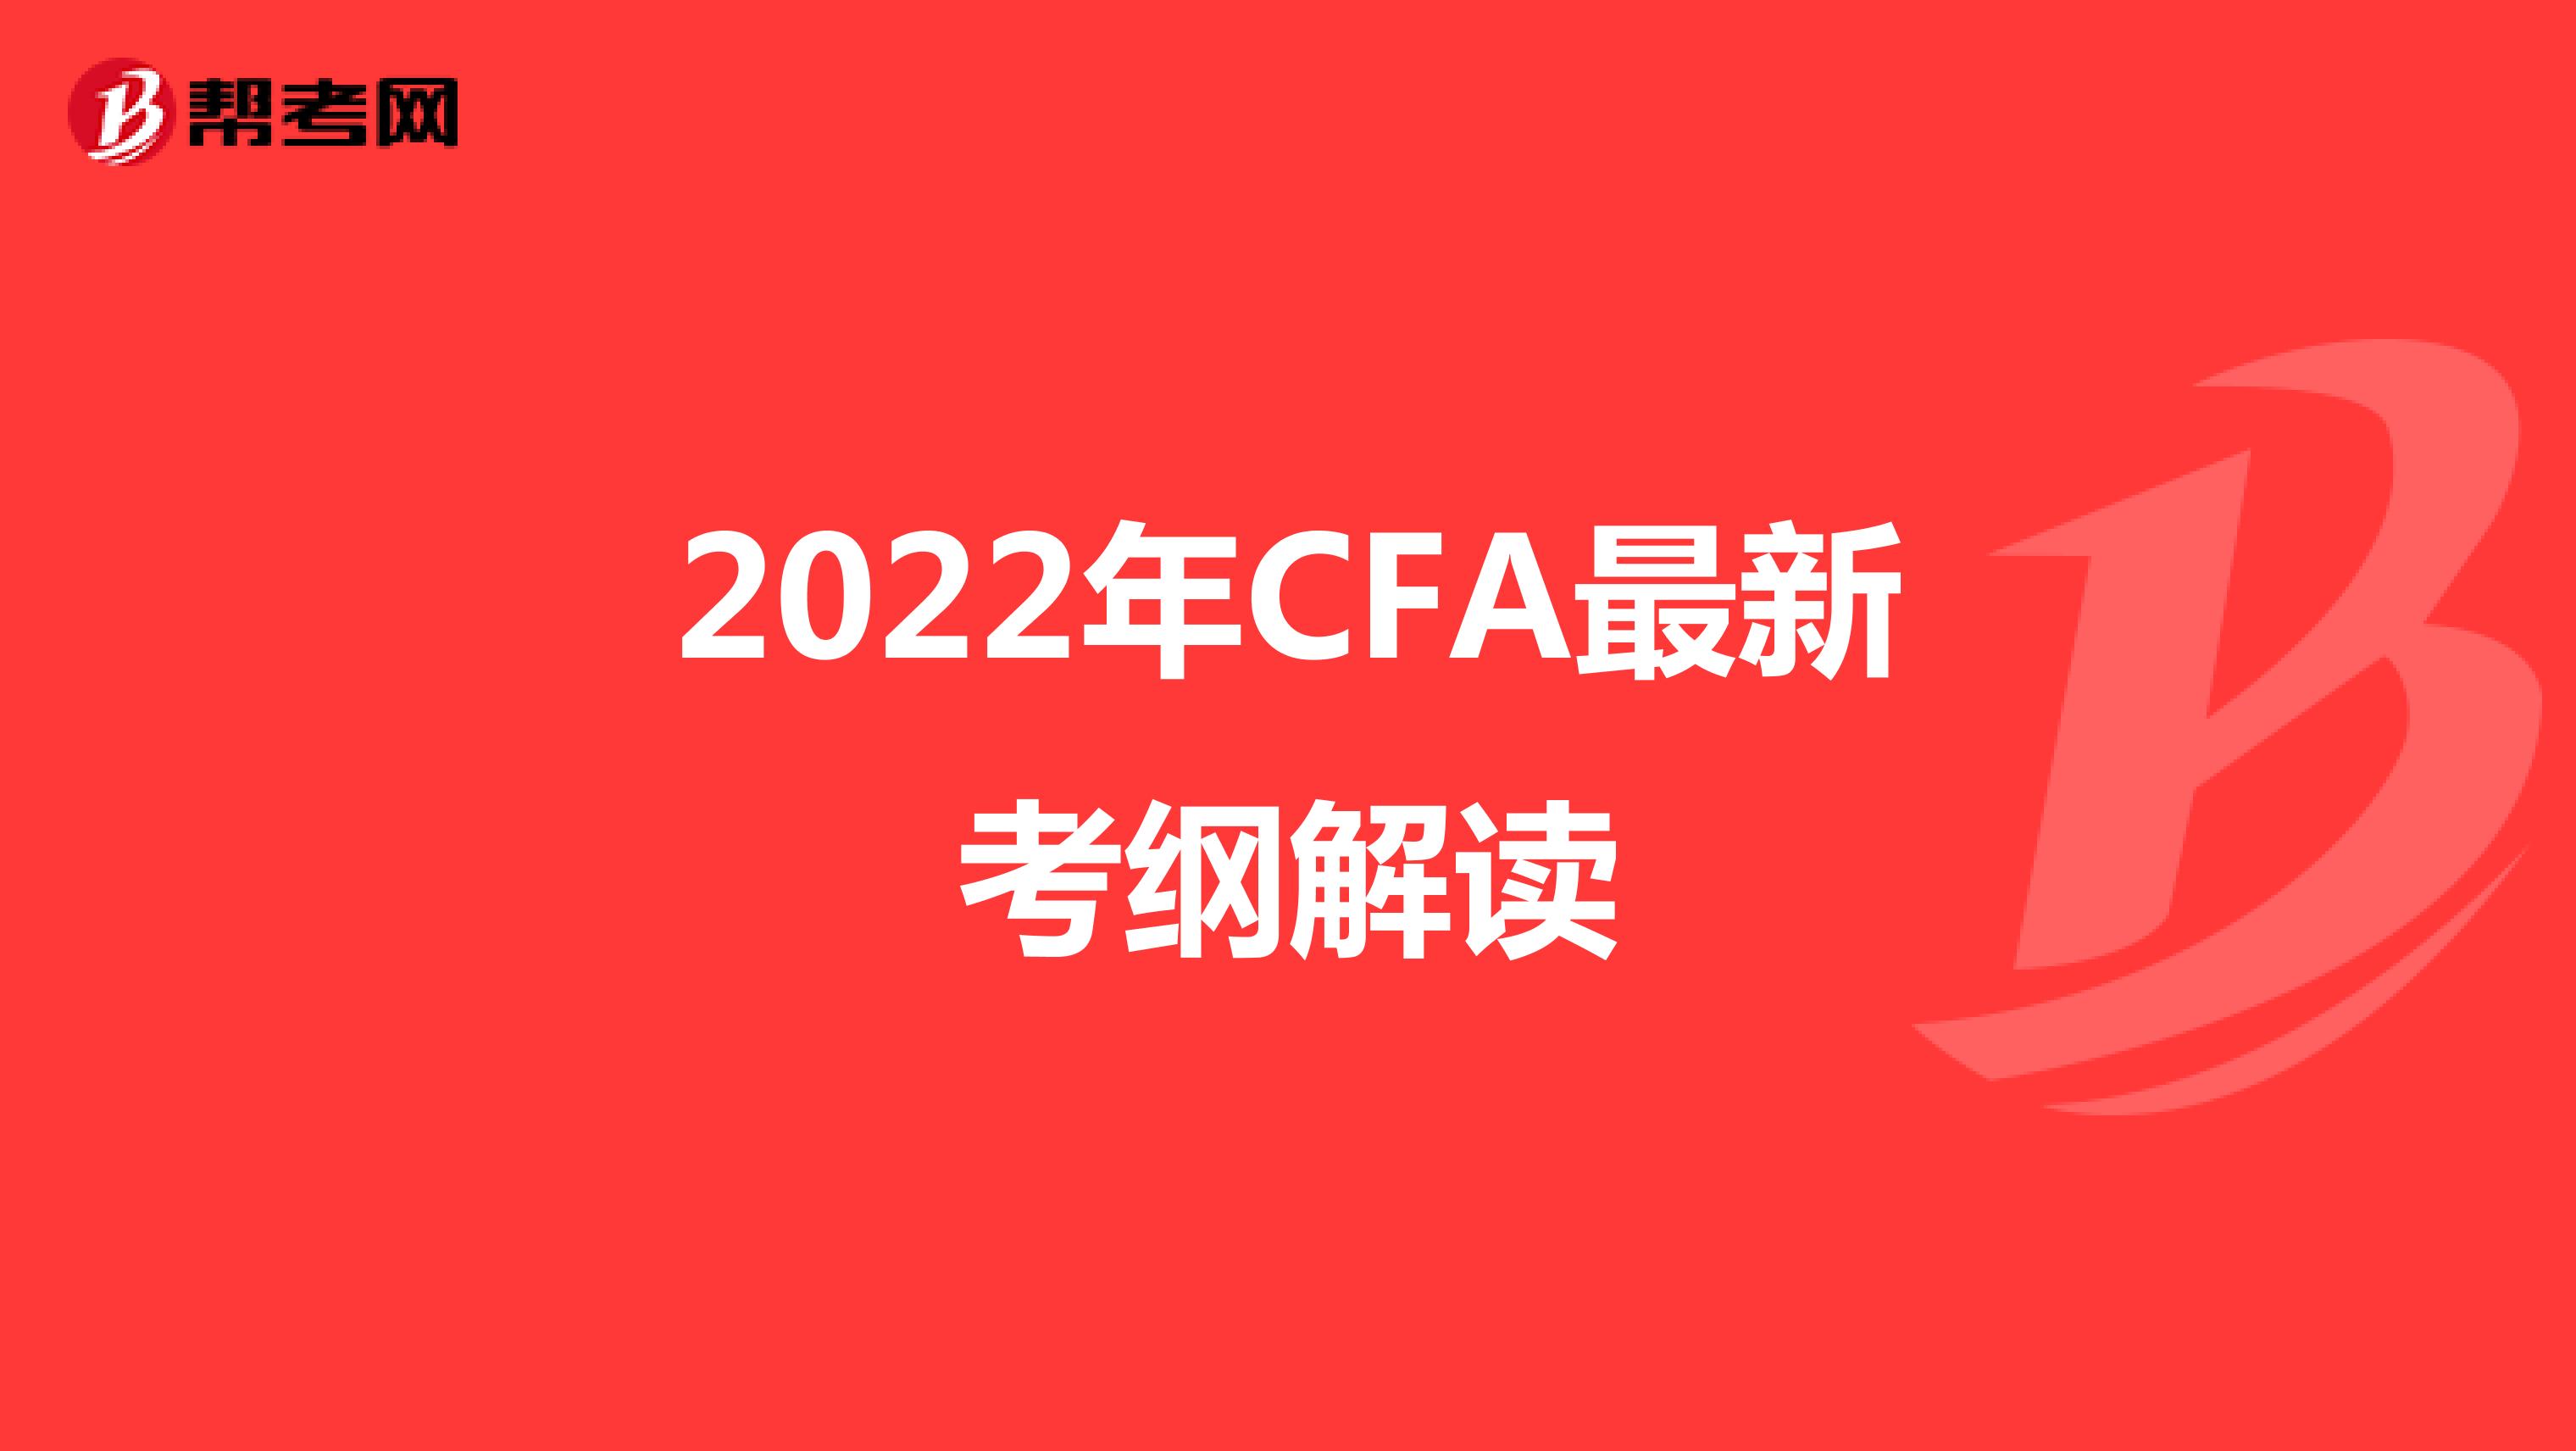 2022年CFA最新考纲解读